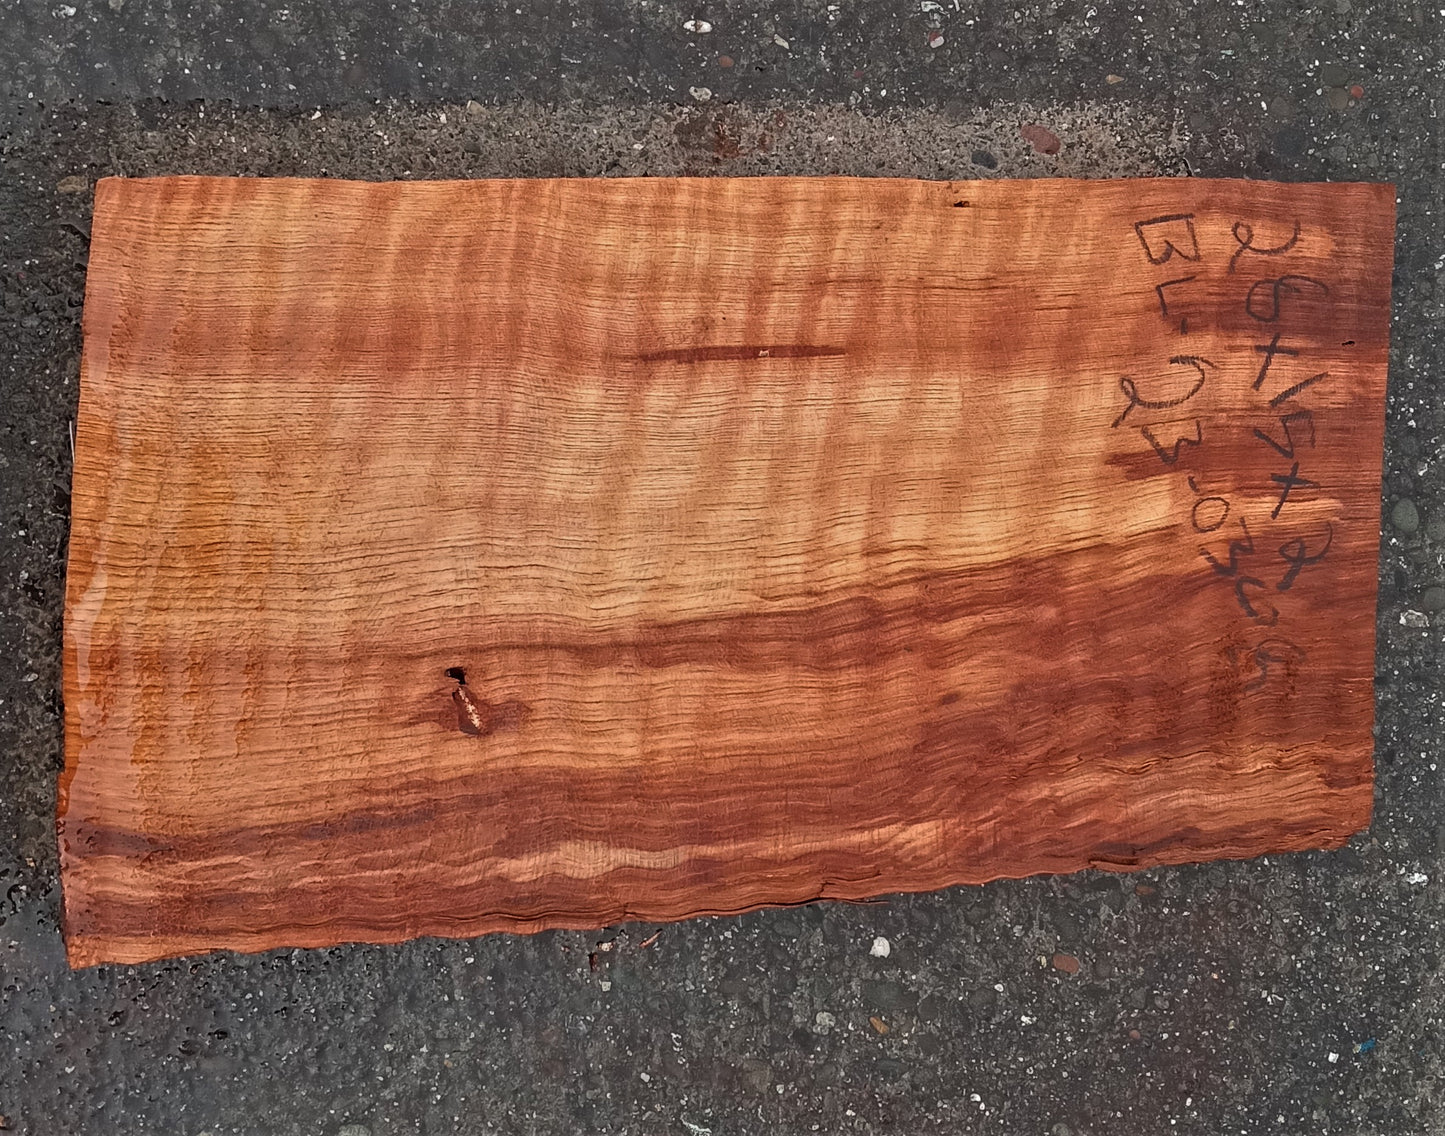 quilted redwood billet | luthier | guitar wood | DIY wood crafts | g23-0308